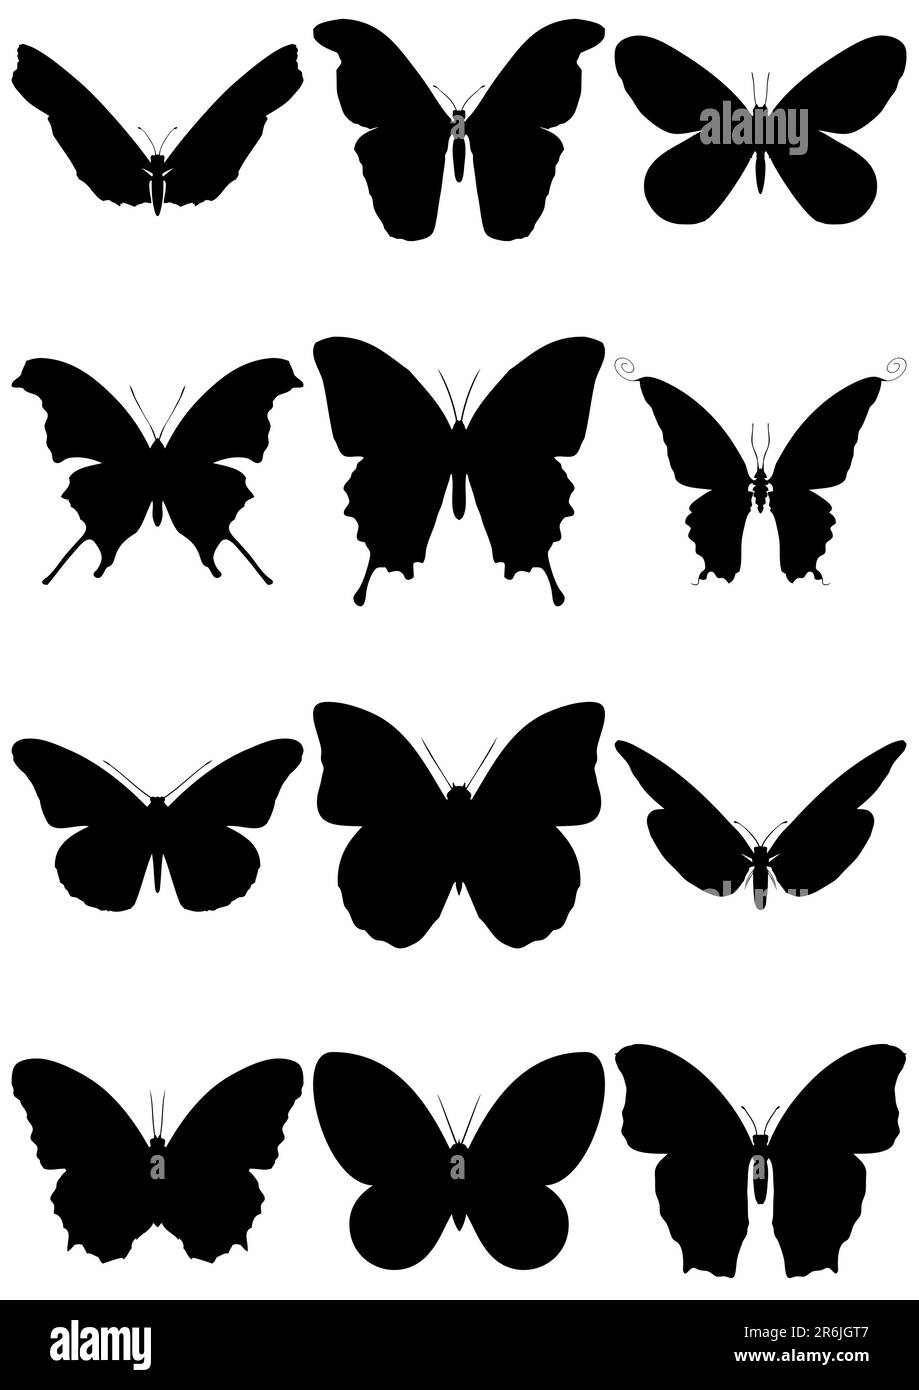 Jeu d'illustrations de 12 silhouettes de papillons différentes. Tous les objets sont isolés et regroupés. Les couleurs et l'arrière-plan transparent sont faciles à régler. Illustration de Vecteur